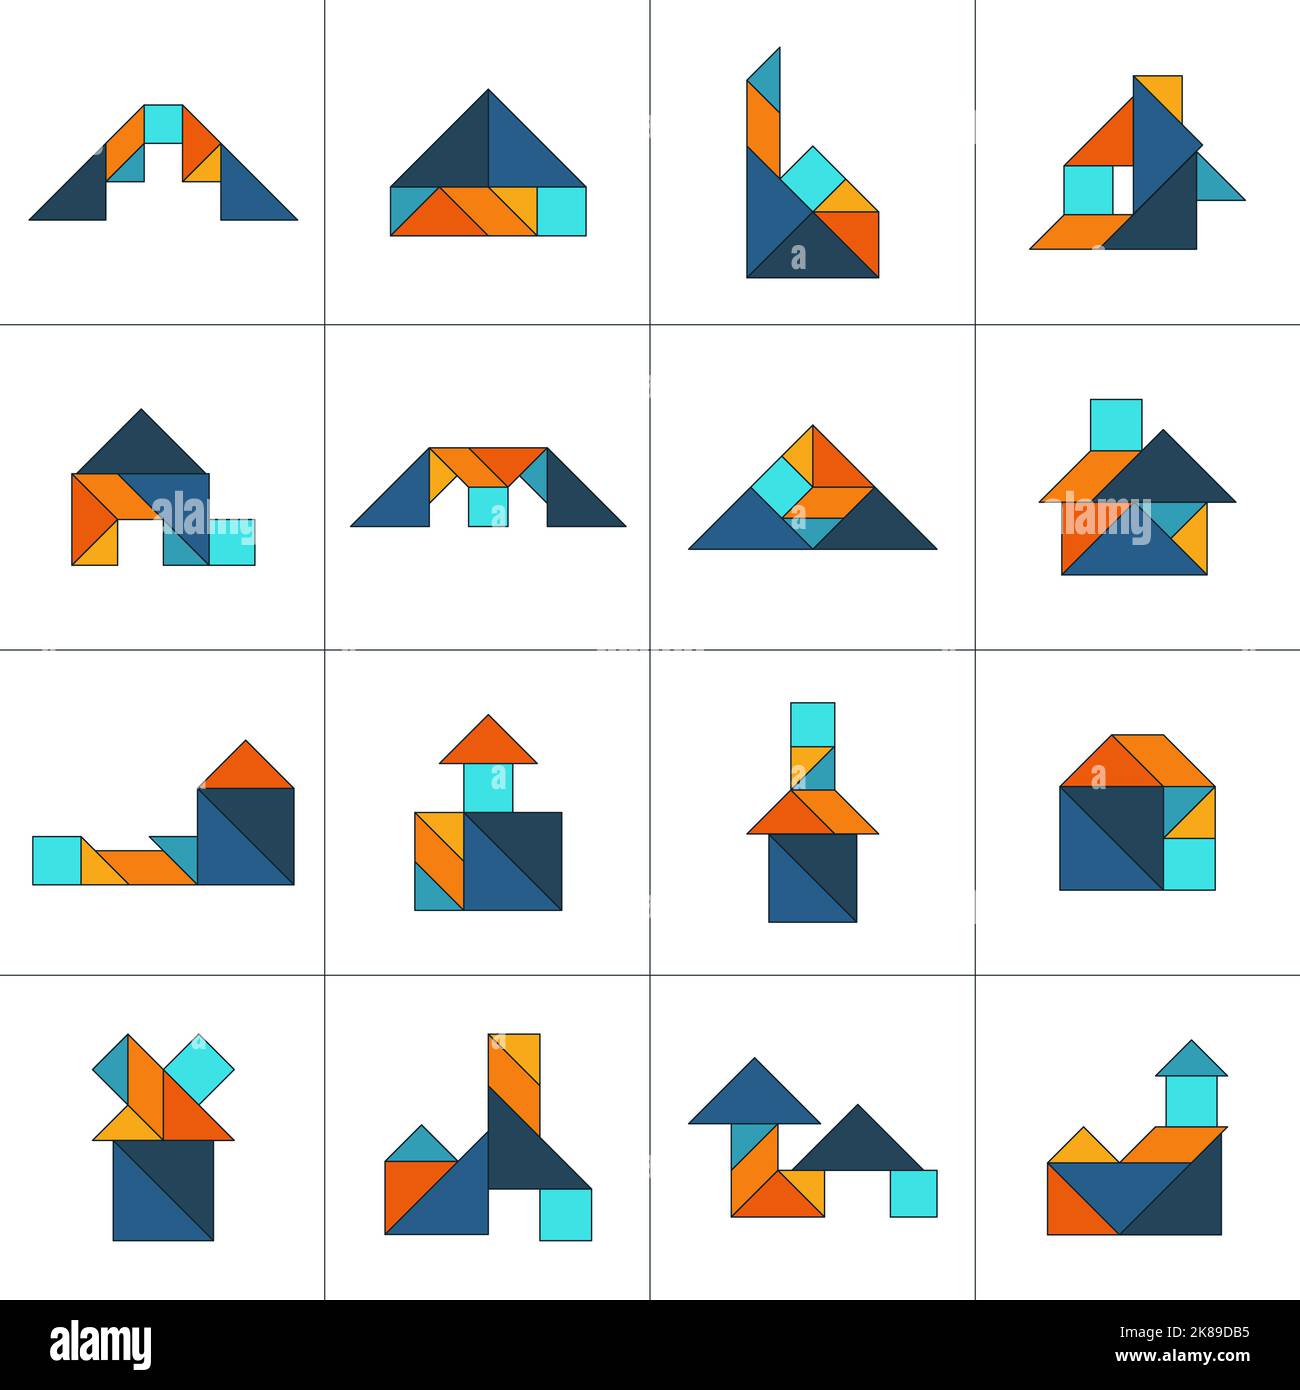 Tangram puzzle for kids. Set of tangram buildings. Stock Vector